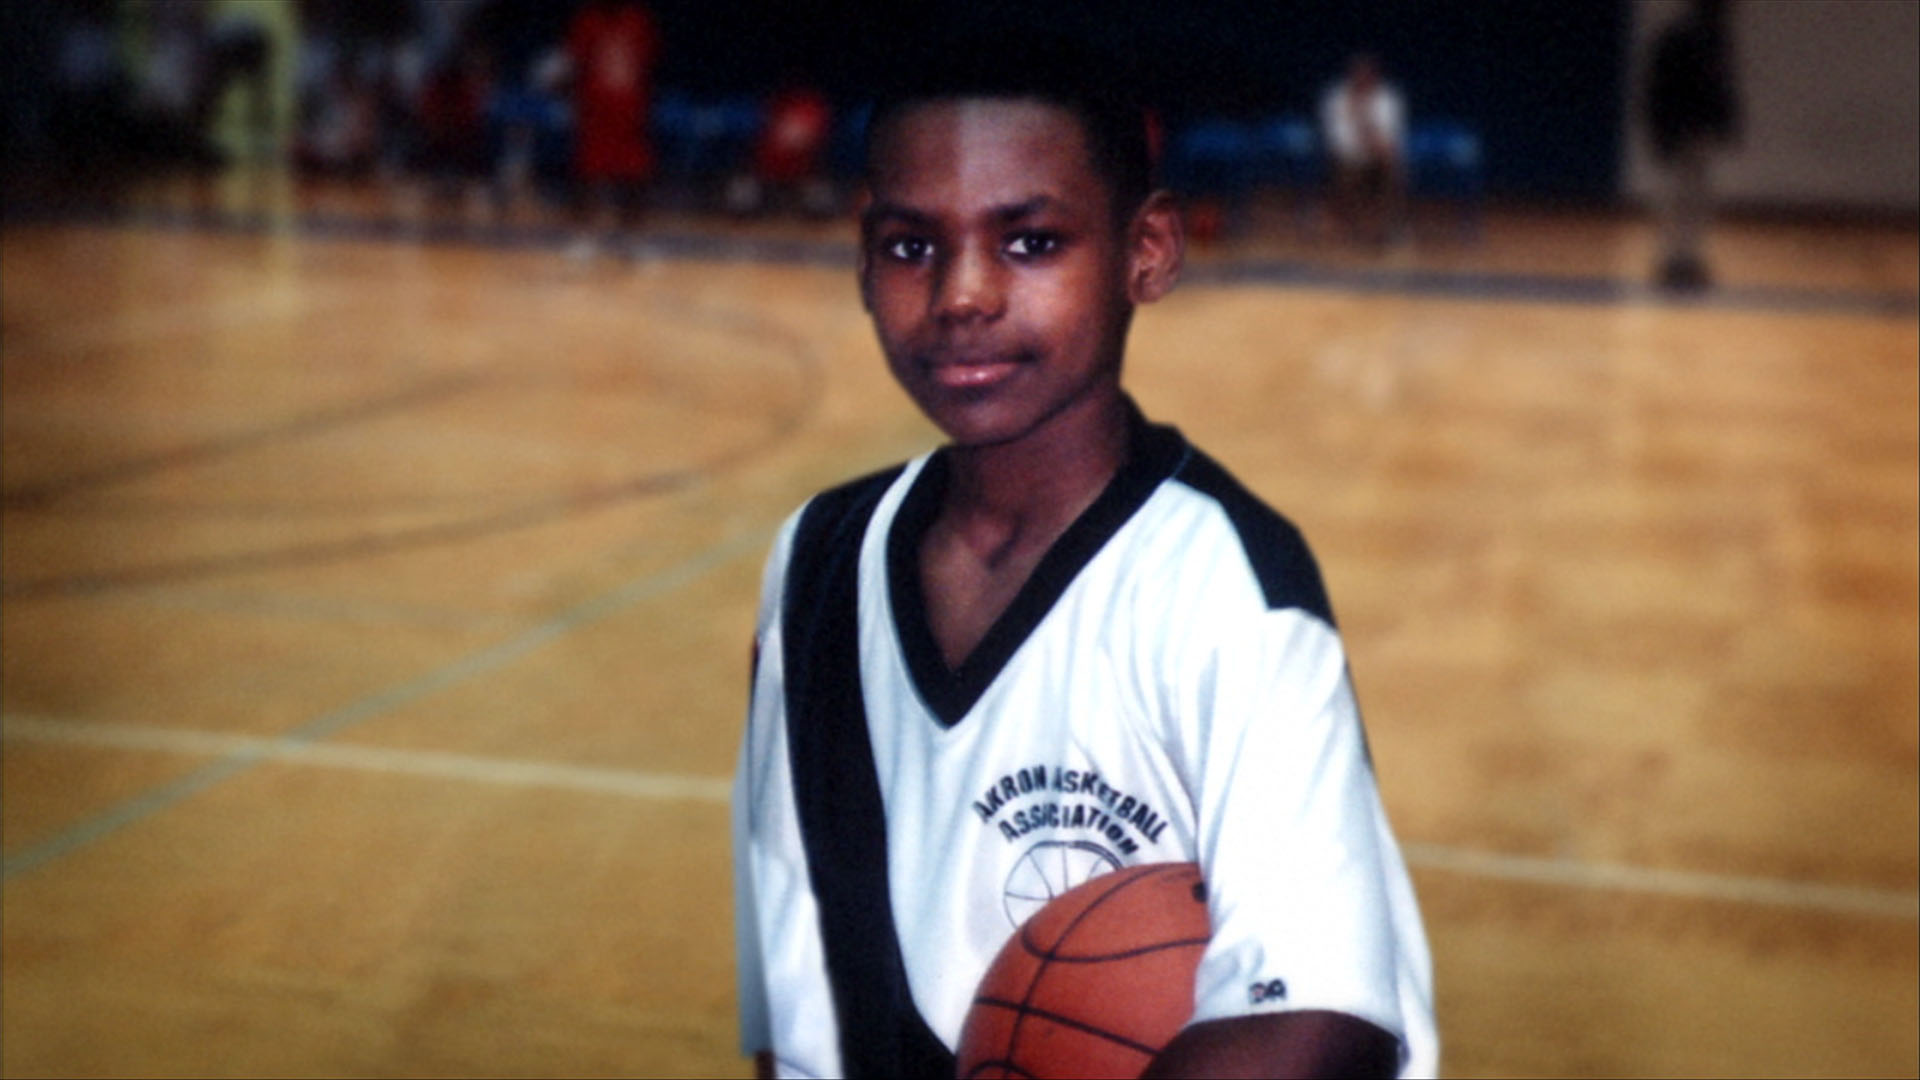 lebron james kid playing basketball